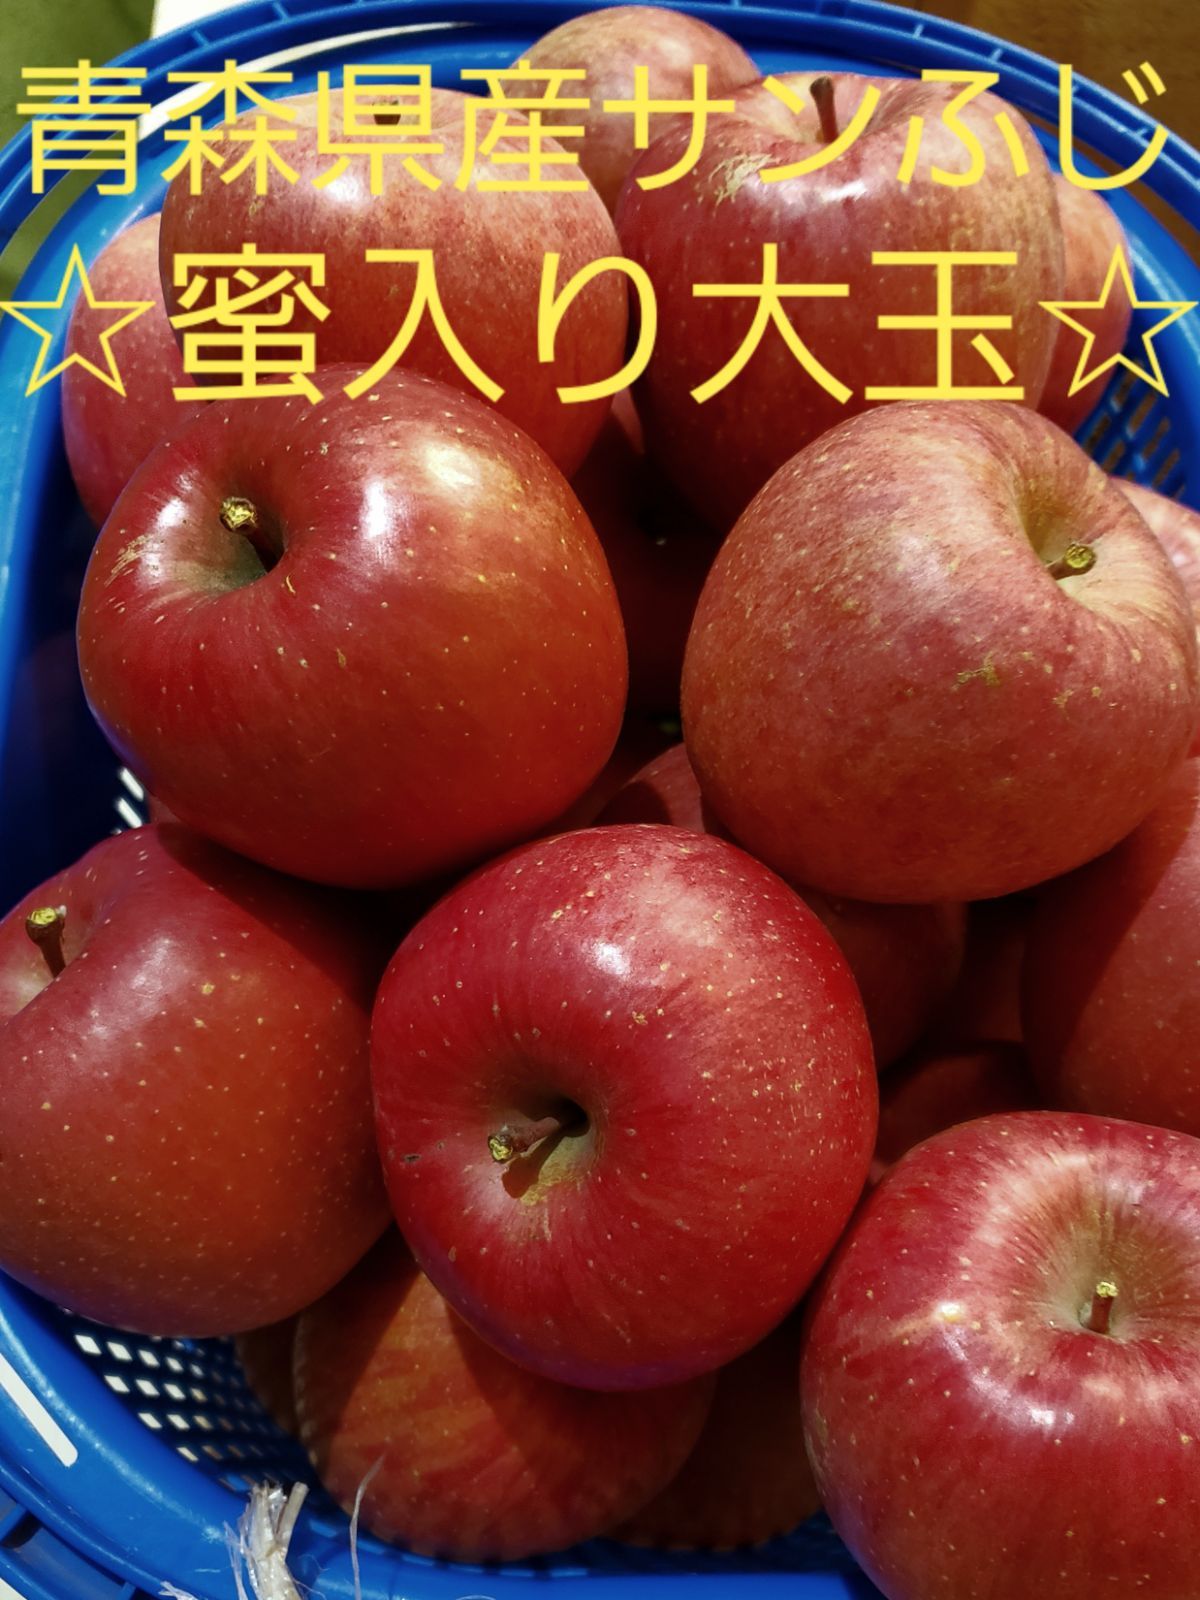 ★期間限定★青森県産 ふじ りんご 大玉入 家庭用 6~8玉